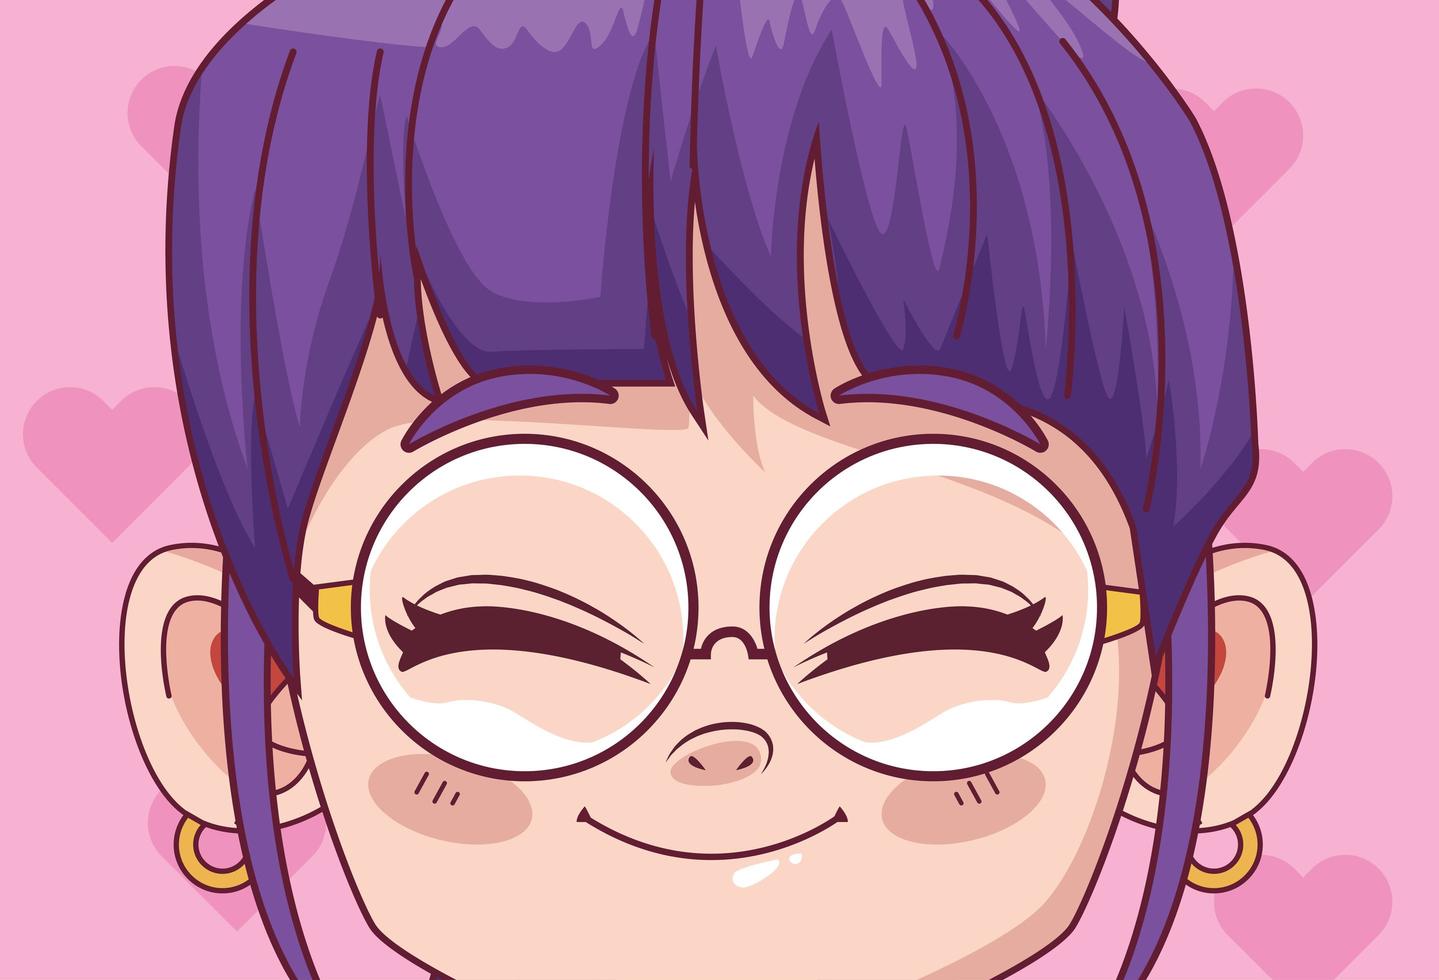 söt liten flicka med glasögon komisk manga karaktär vektor